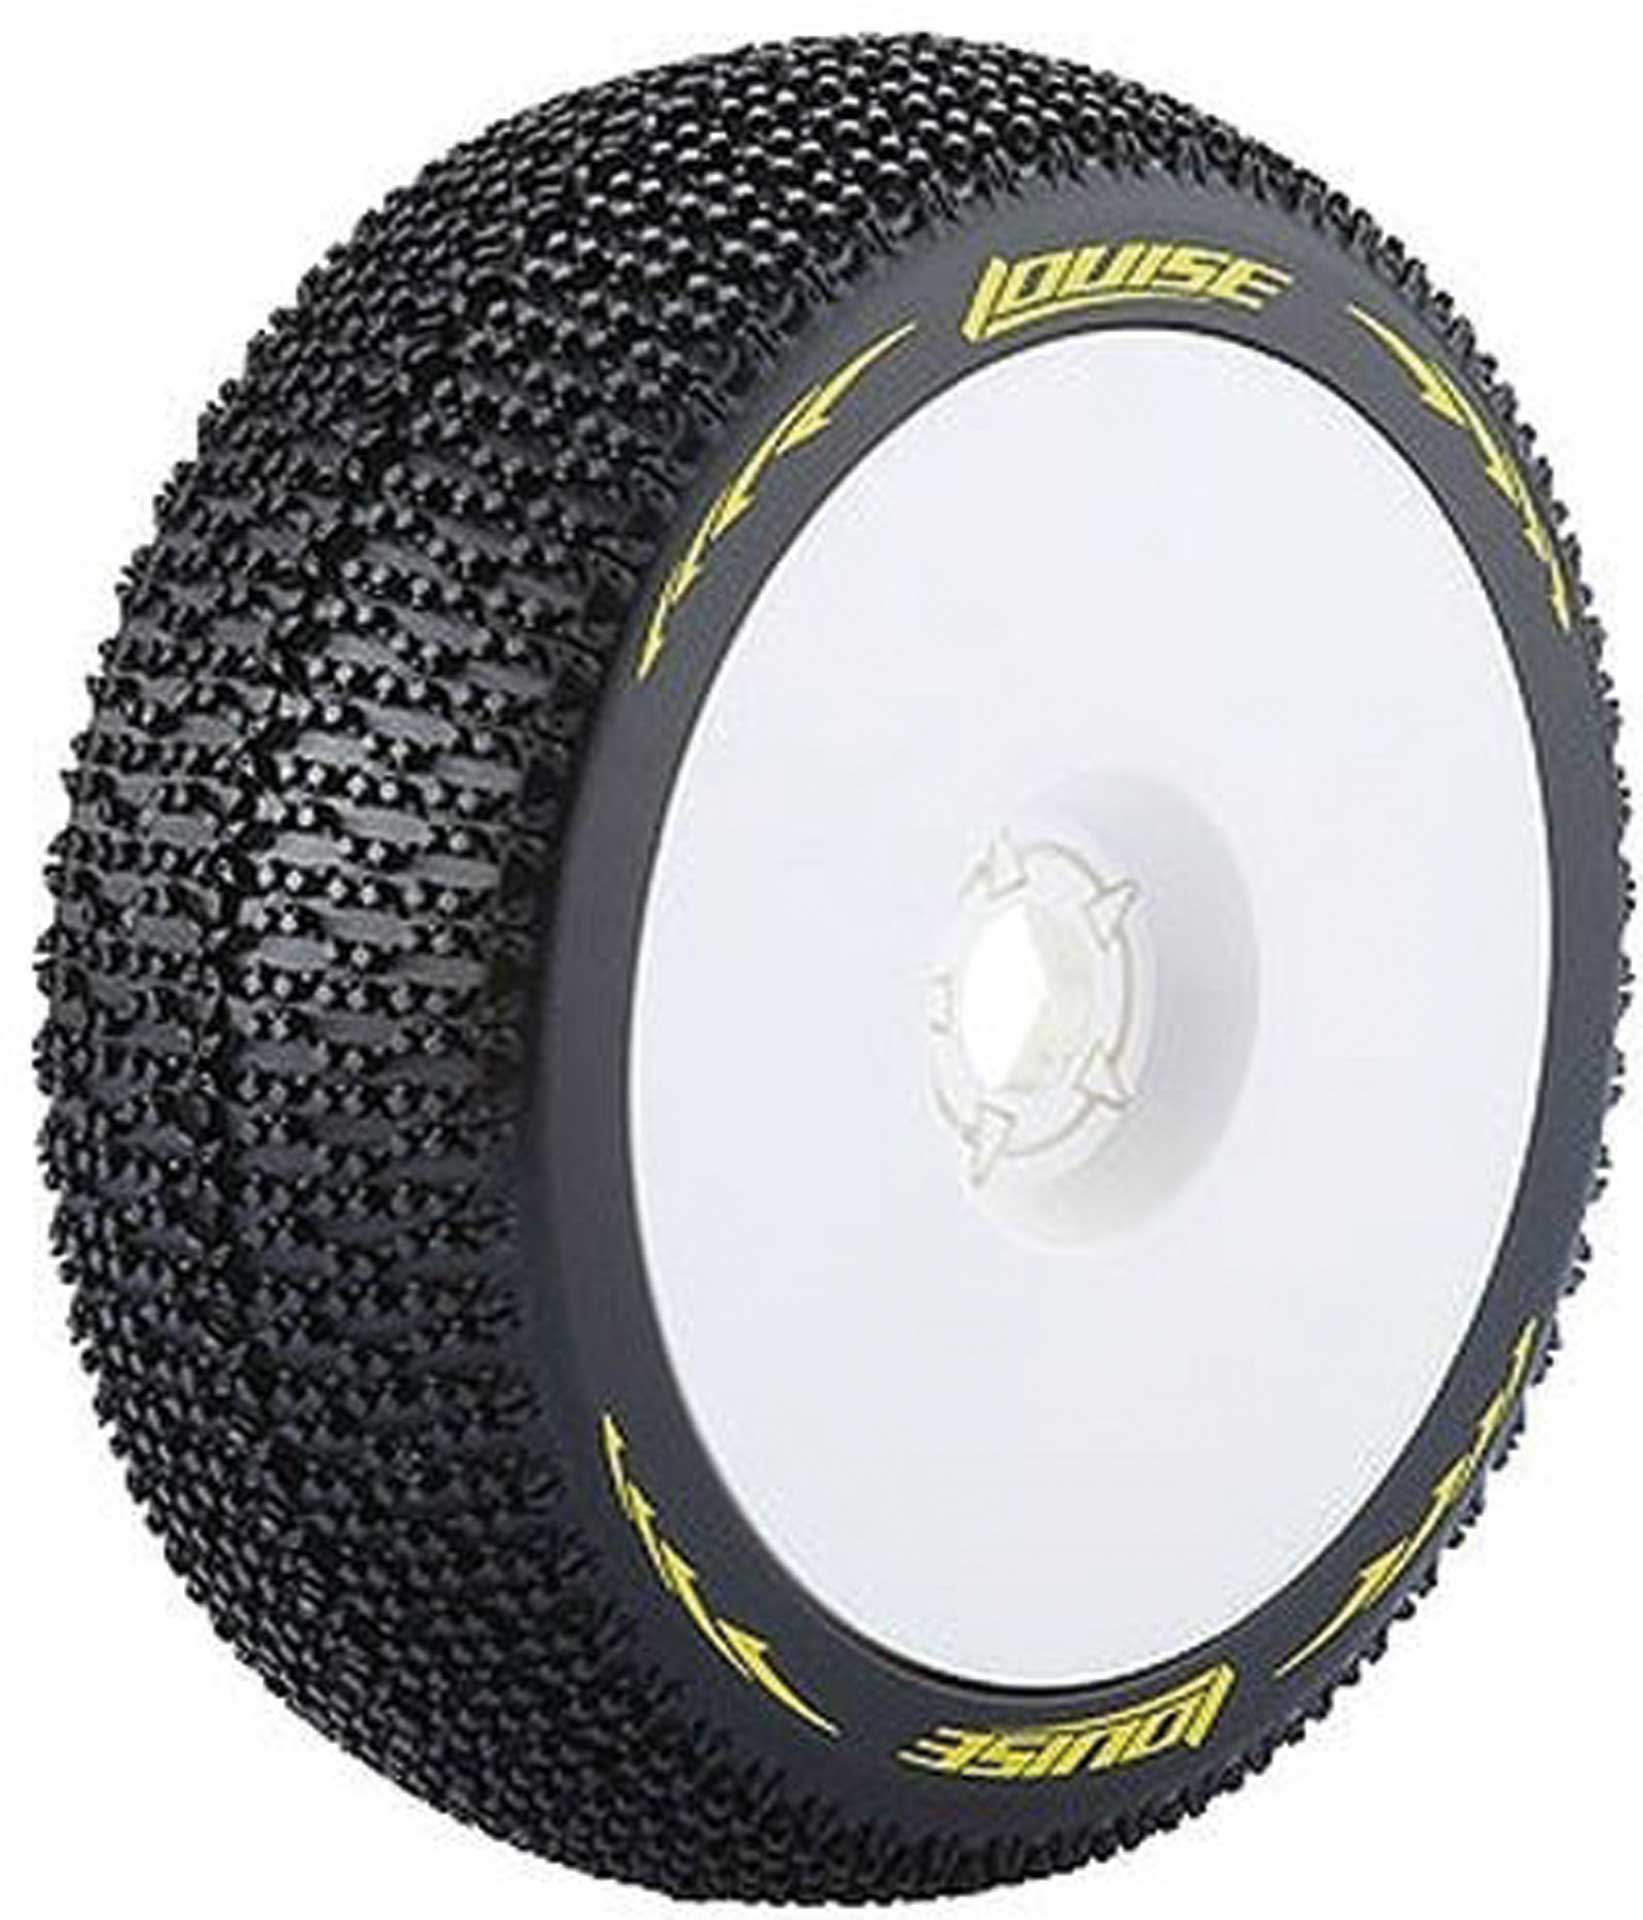 LOUISE B-Maglev Reifen soft auf Felge weiß 17mm (2)